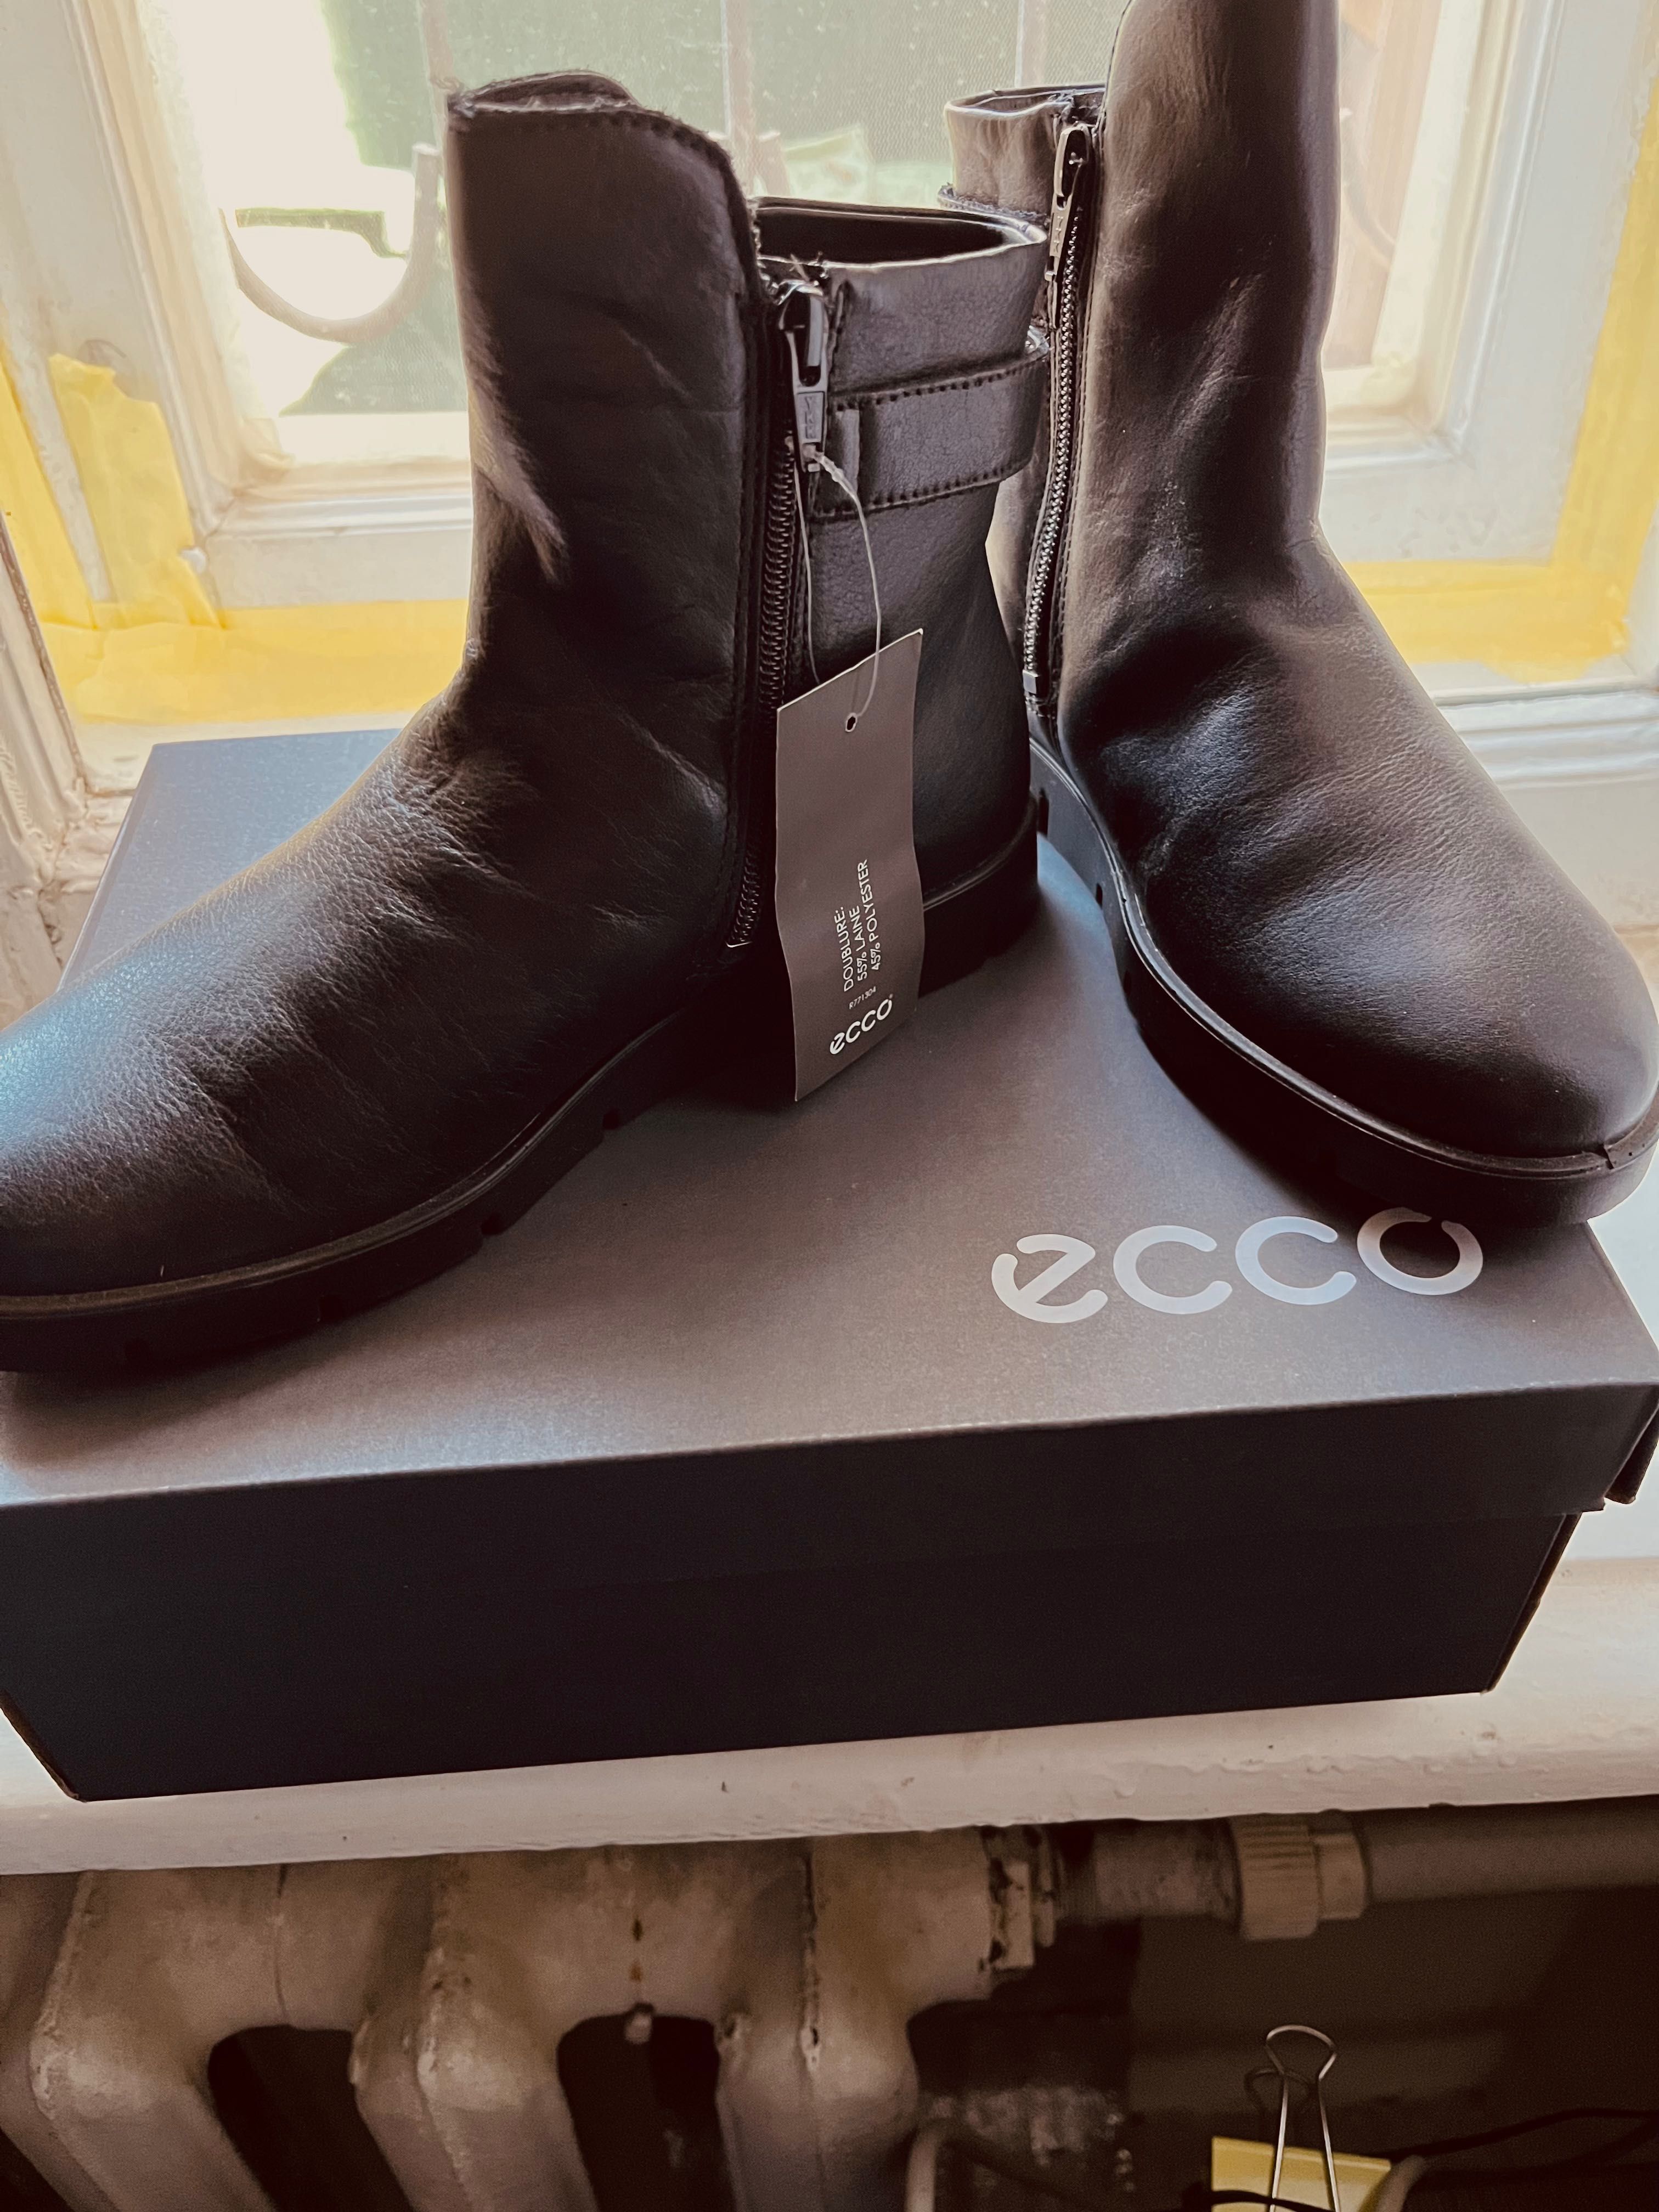 Женская обувь из бутикa ECCO